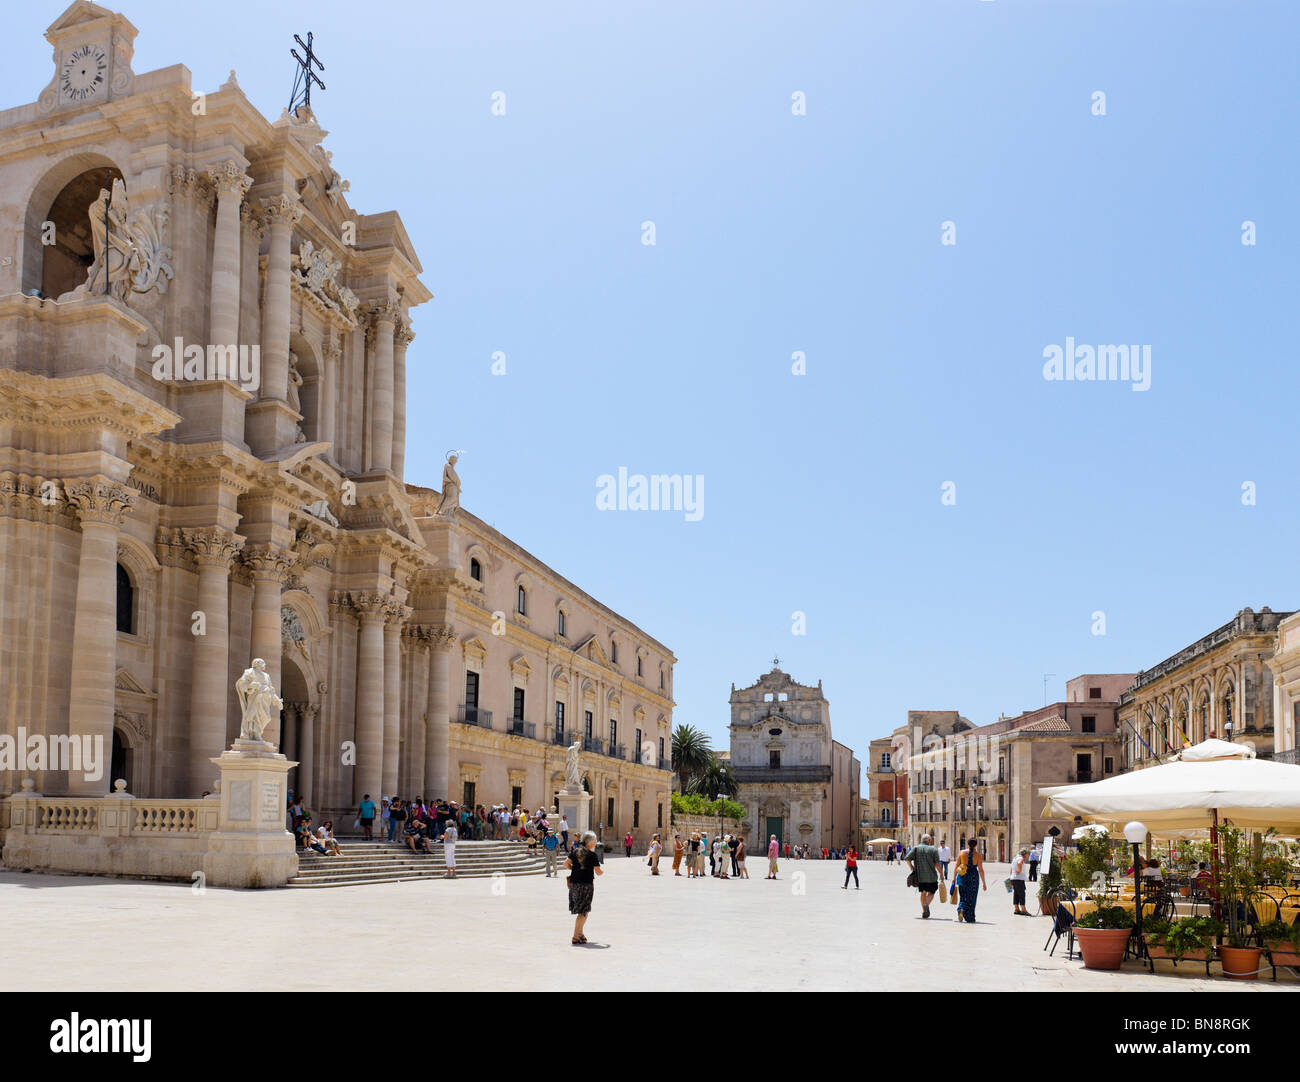 Piazza del Duomo con la cattedrale sulla sinistra, Ortigia, Siracusa (Siracusa), Sicilia, Italia Foto Stock